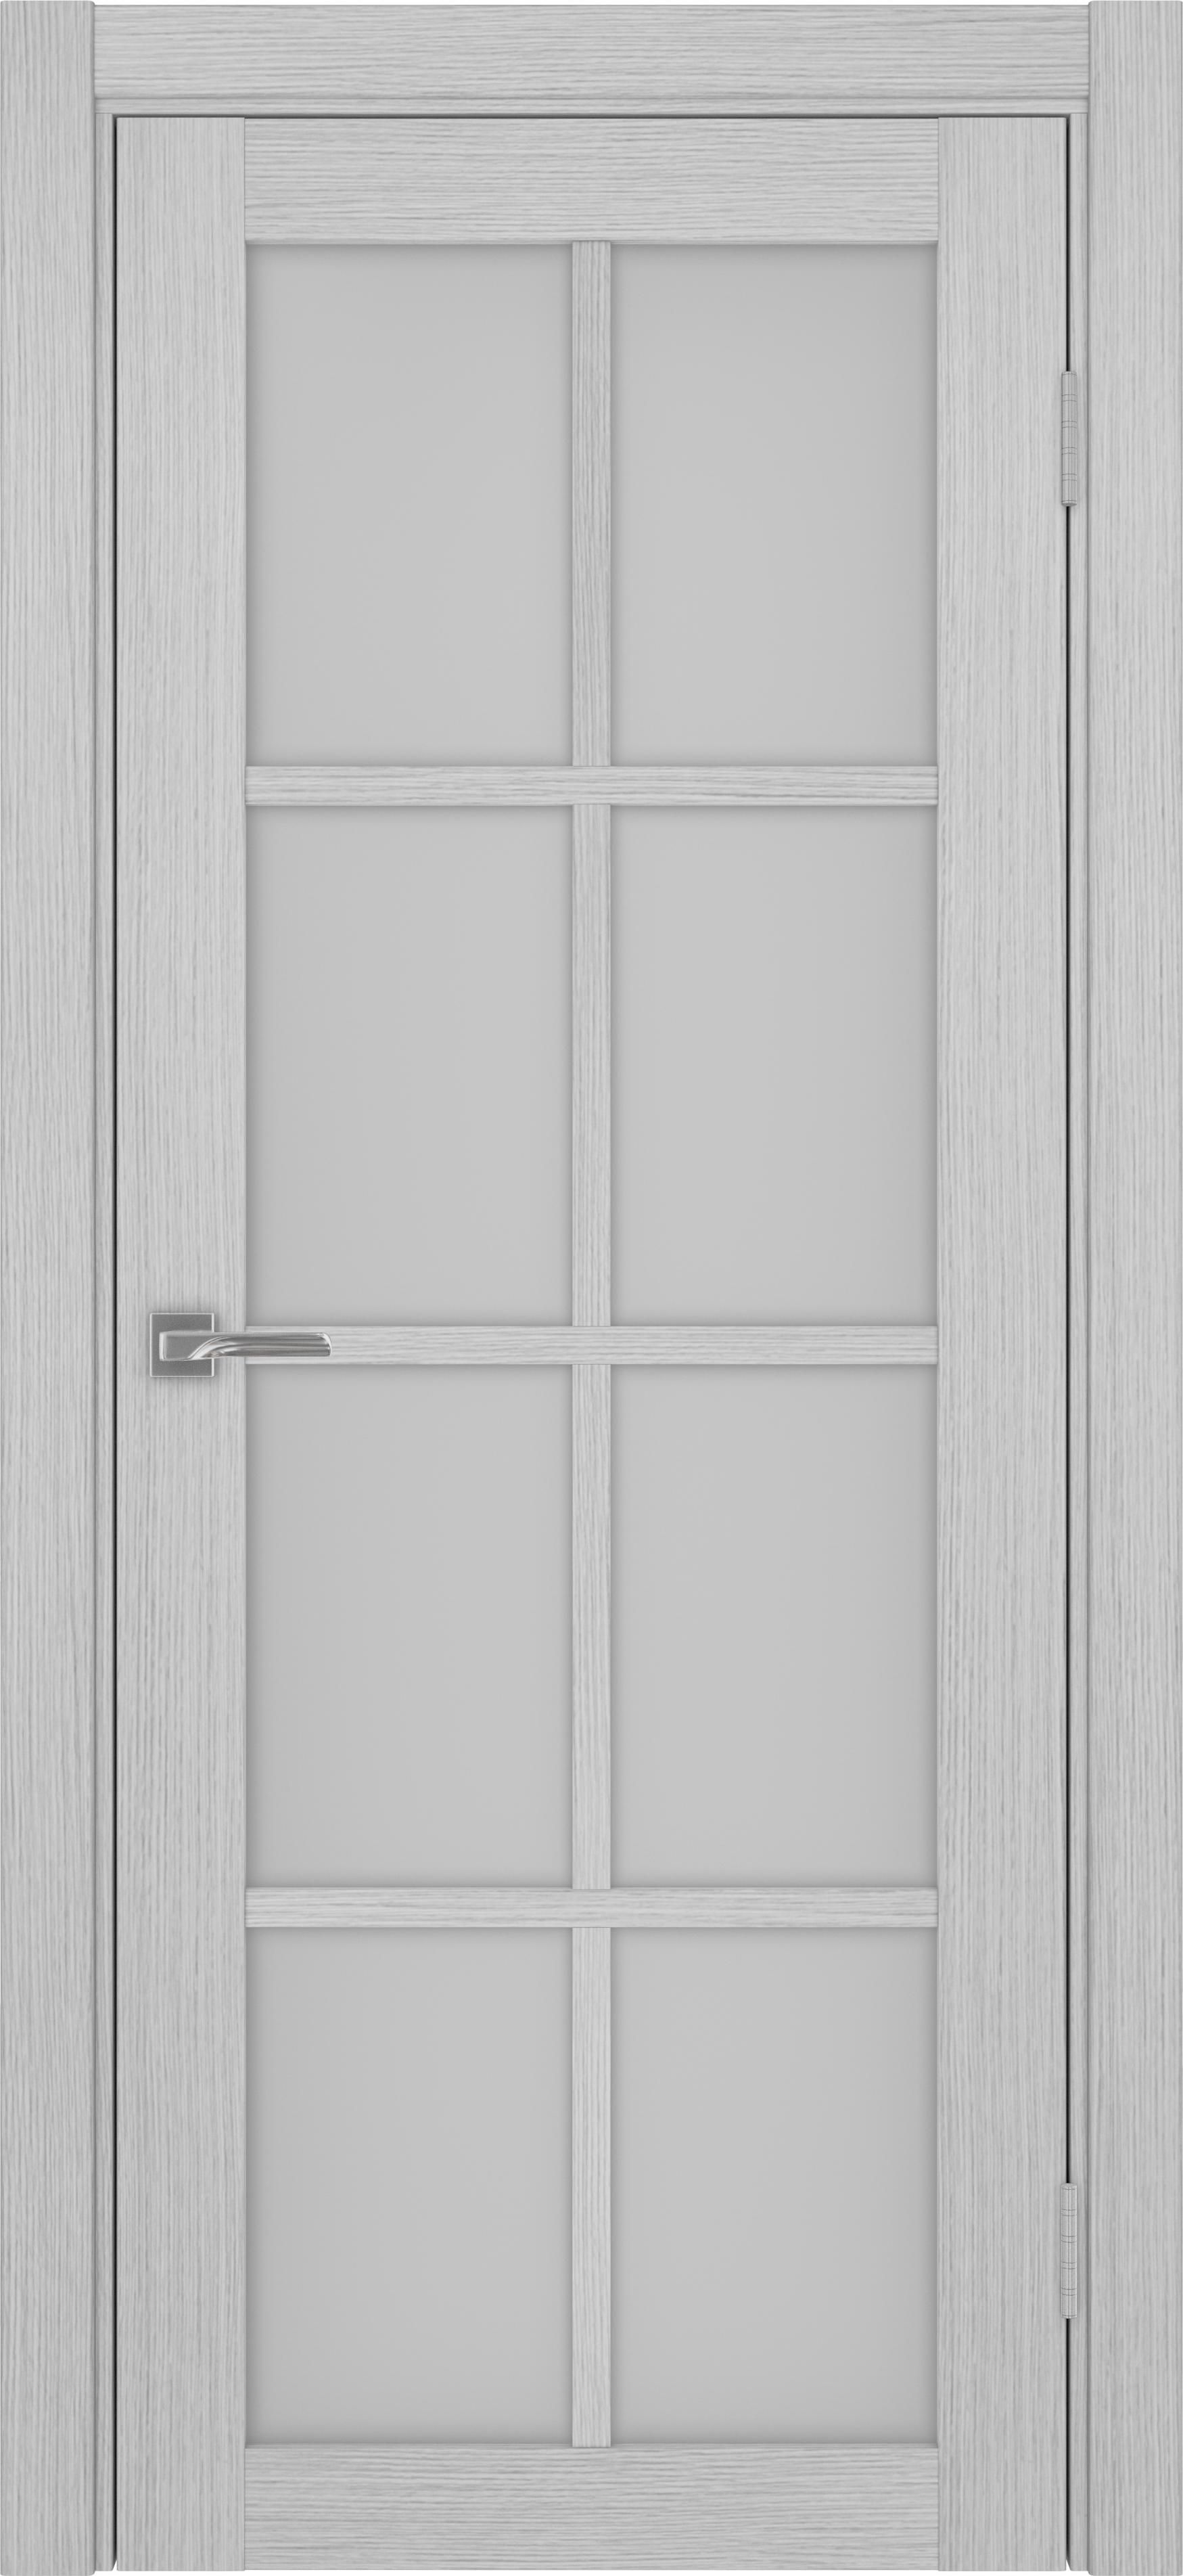 Межкомнатная дверь «Турин 541.2222 Дуб серый» стекло сатин